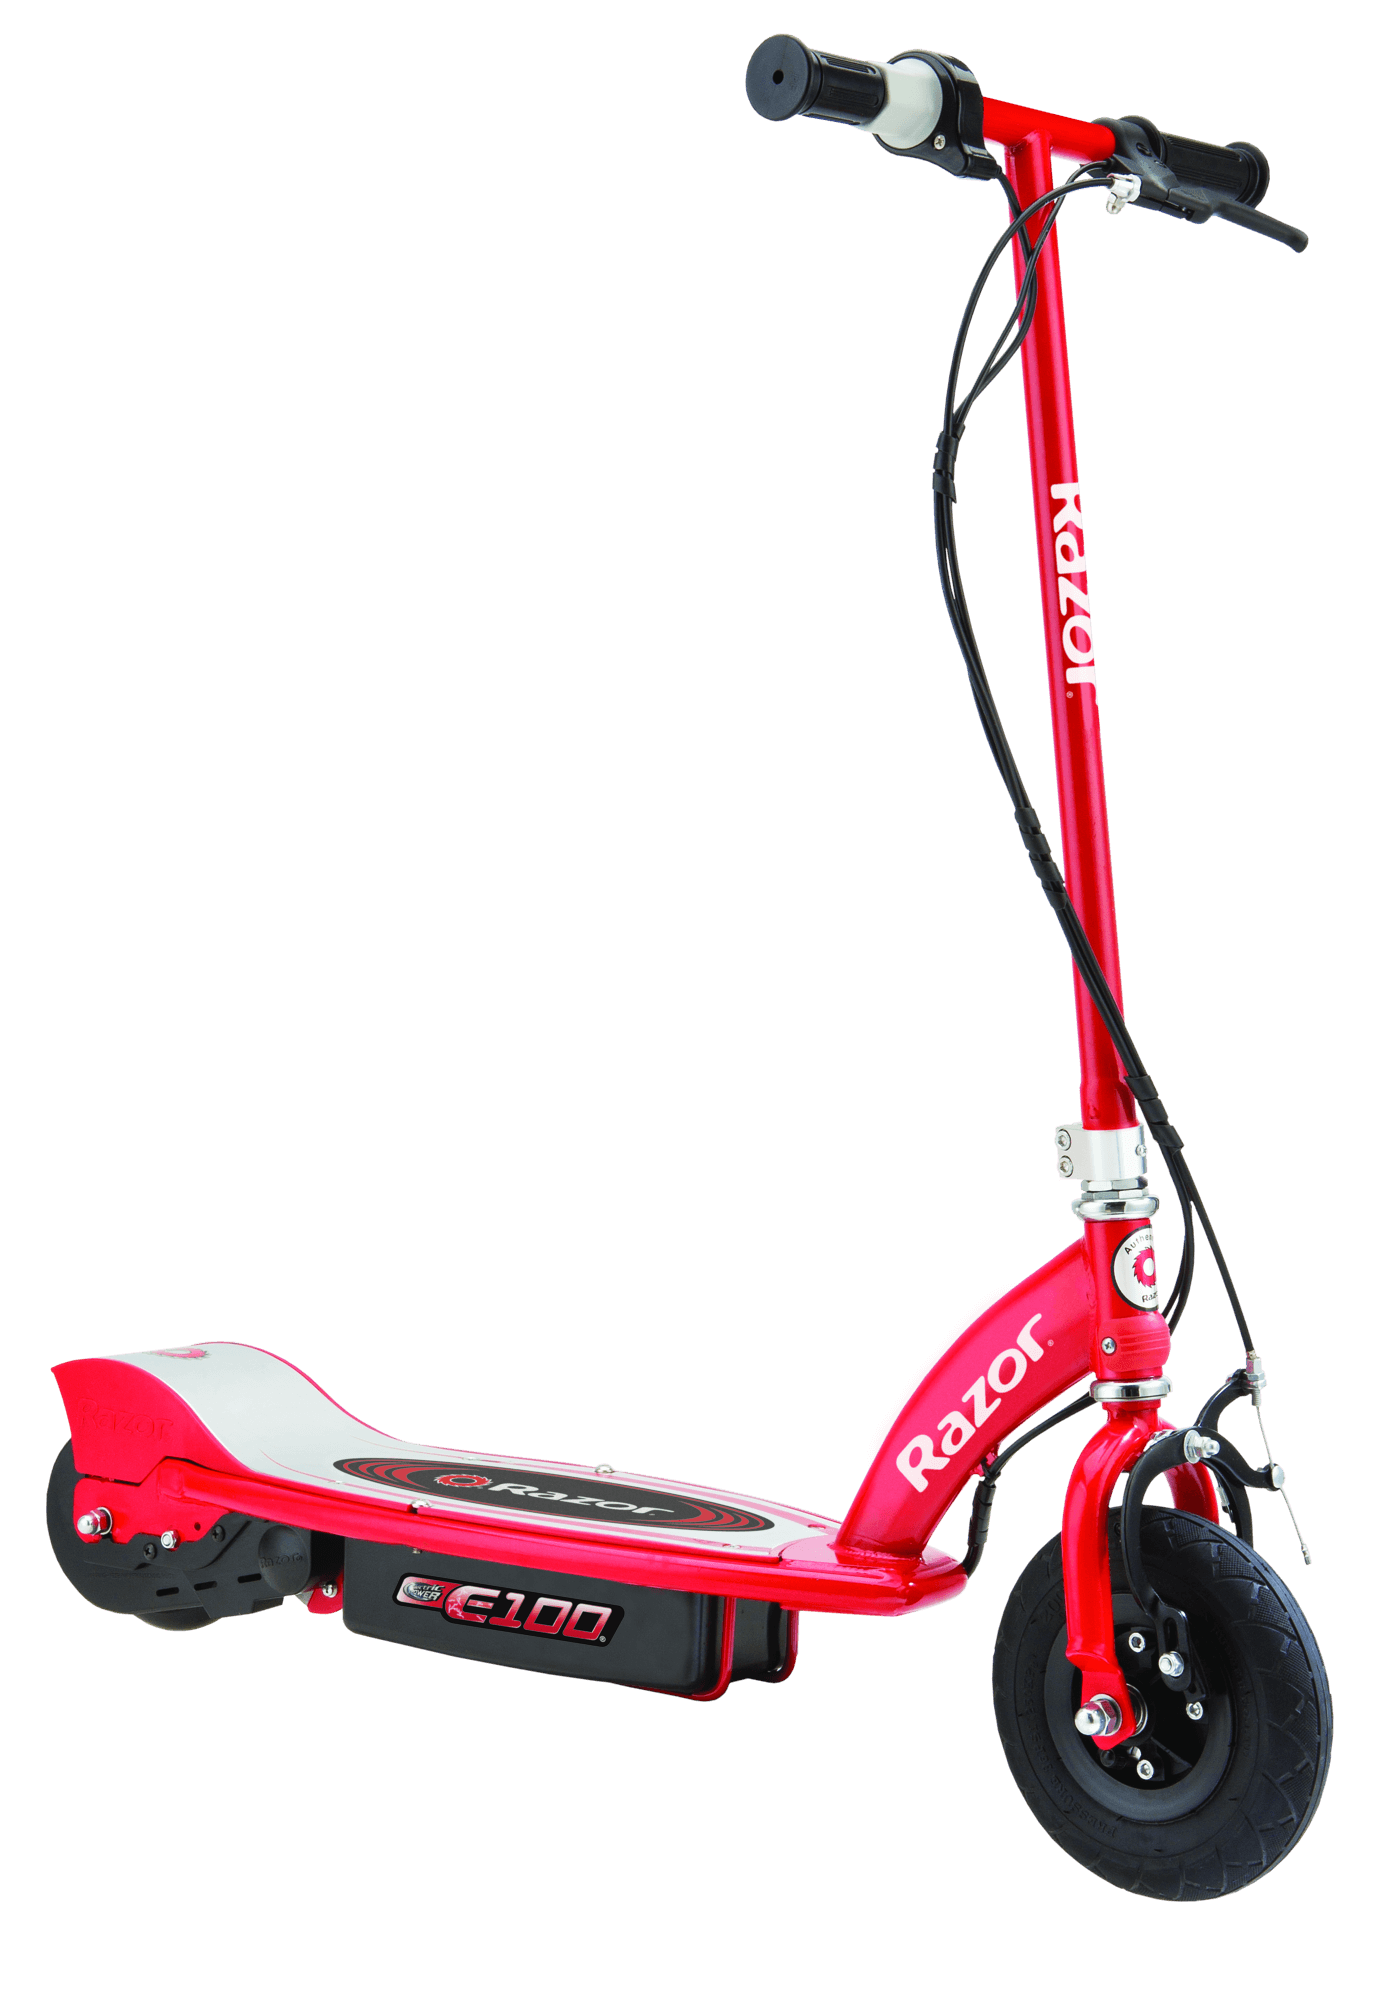 E100 Electric Scooter - Razor